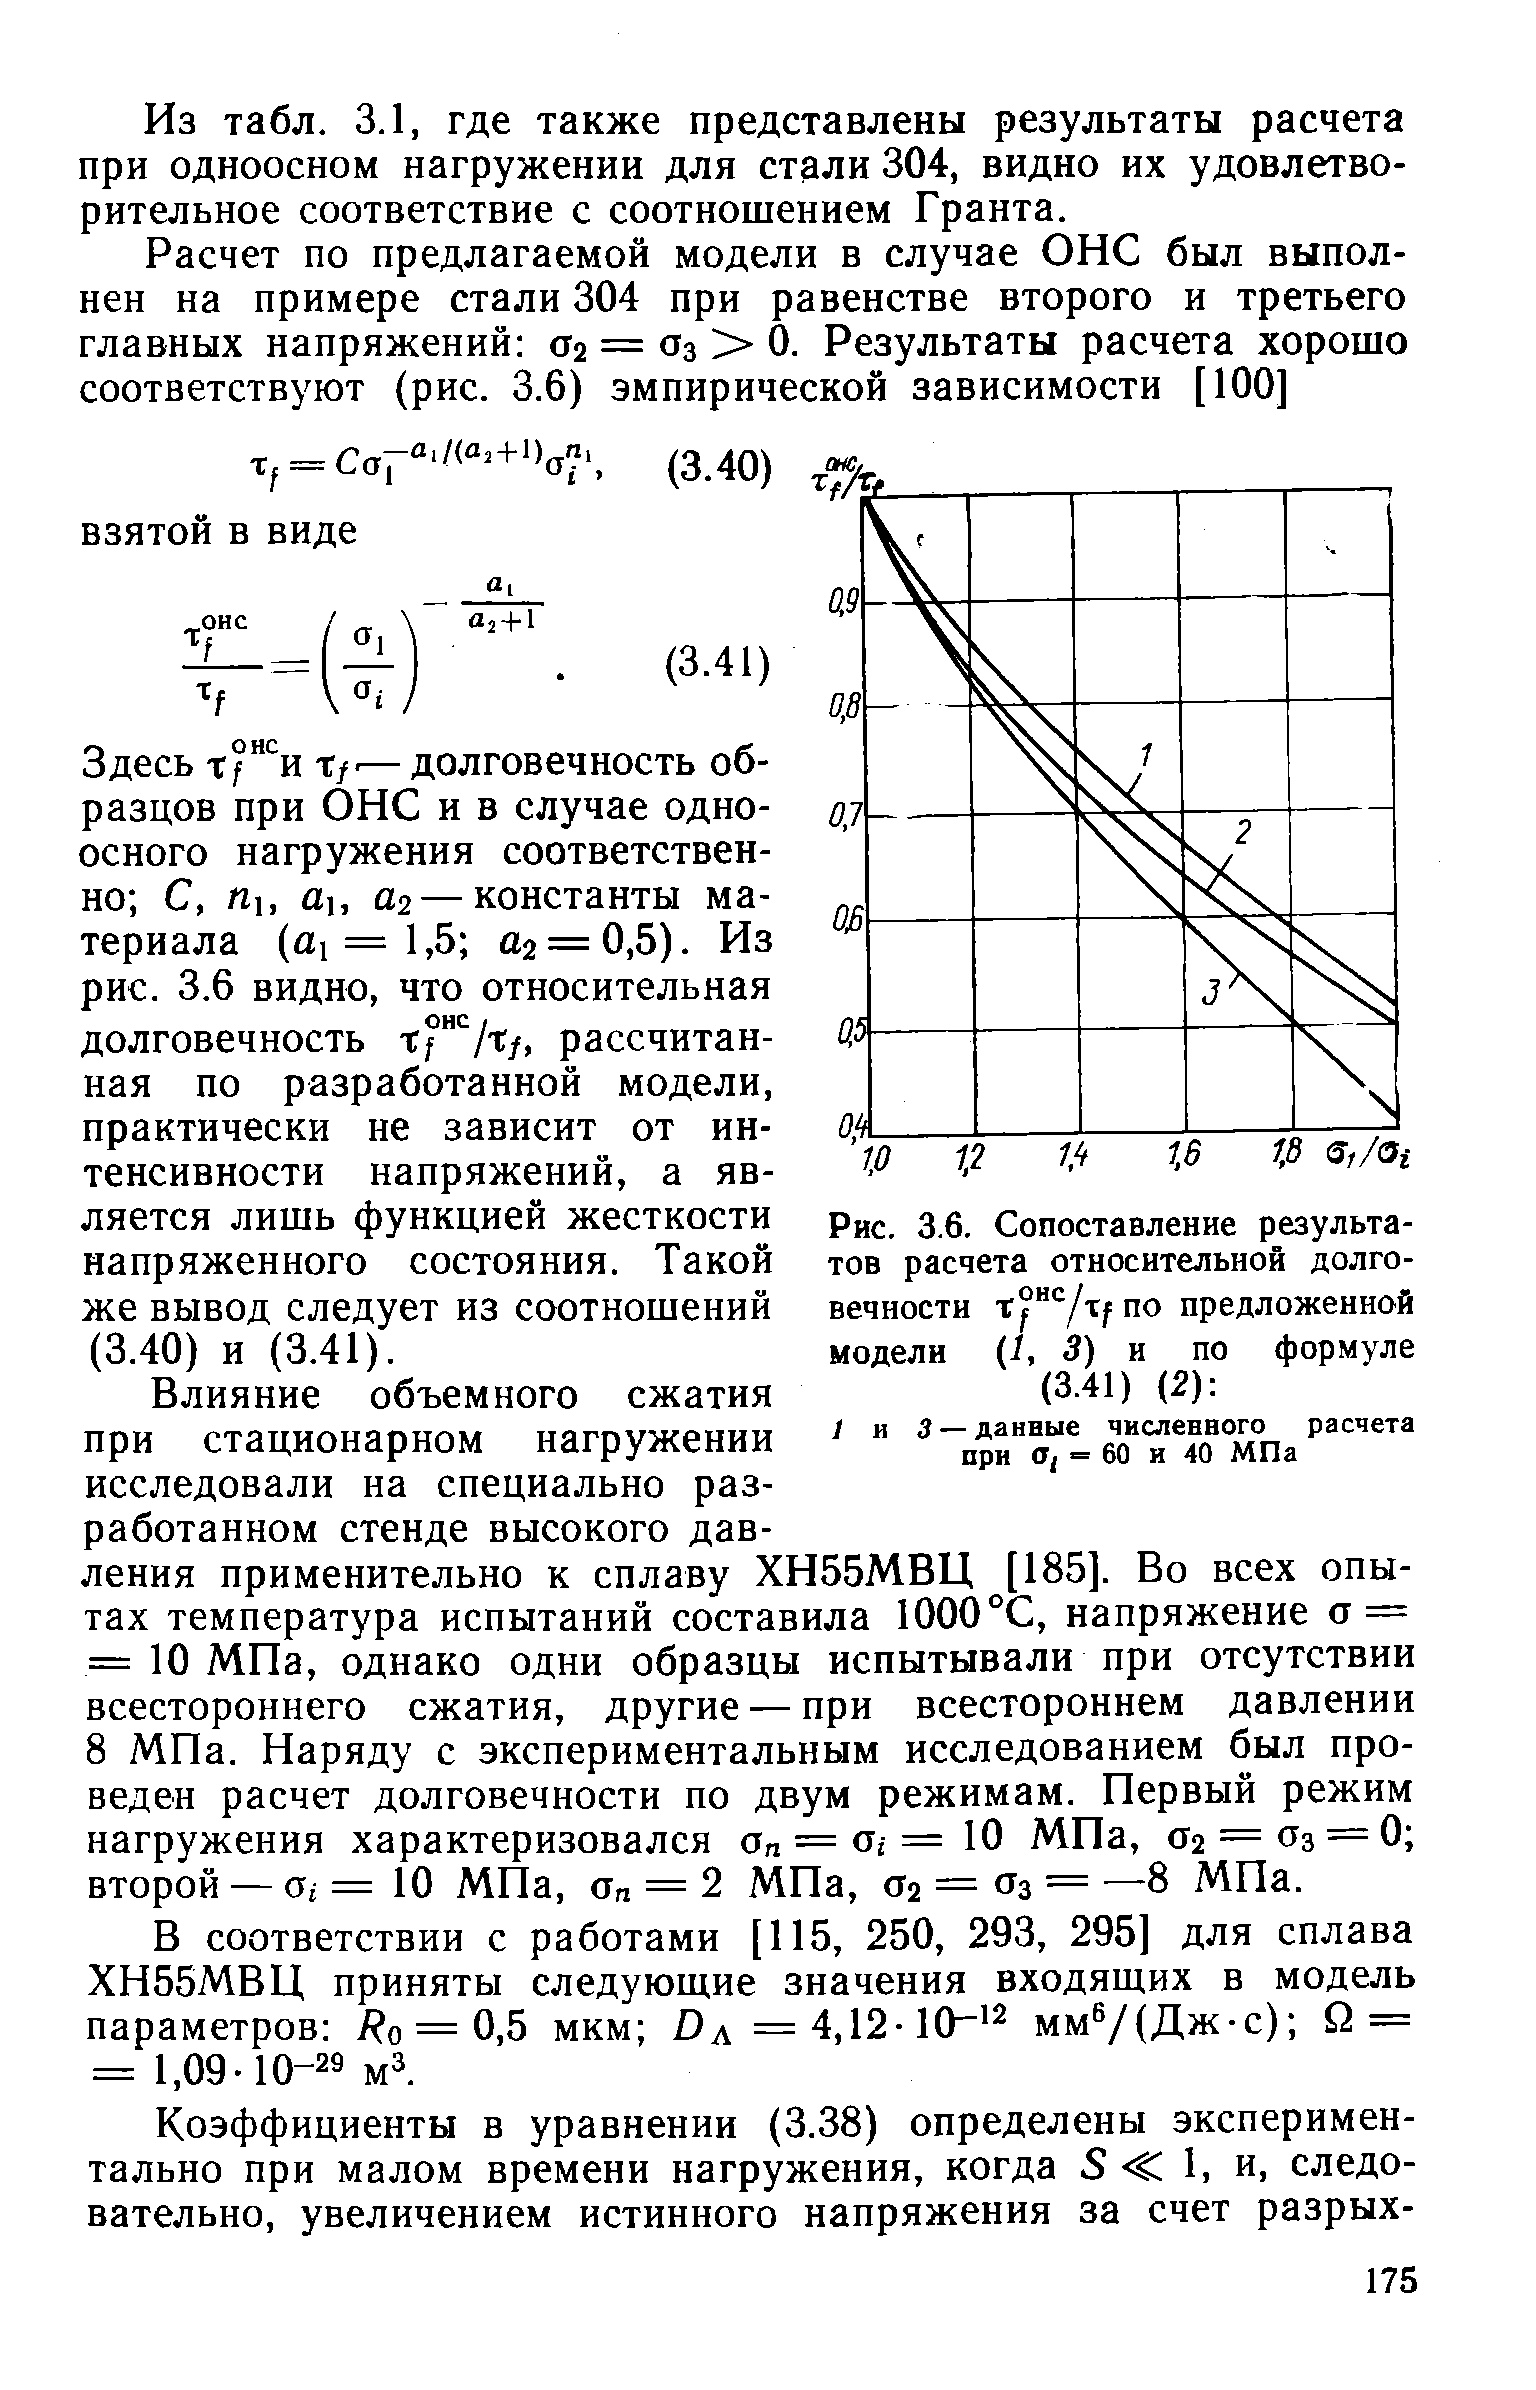 Рис. 3.6. Сопоставление результатов расчета относительной долговечности по предложенной модели (1, 3) и по формуле (3.41) (2) 
